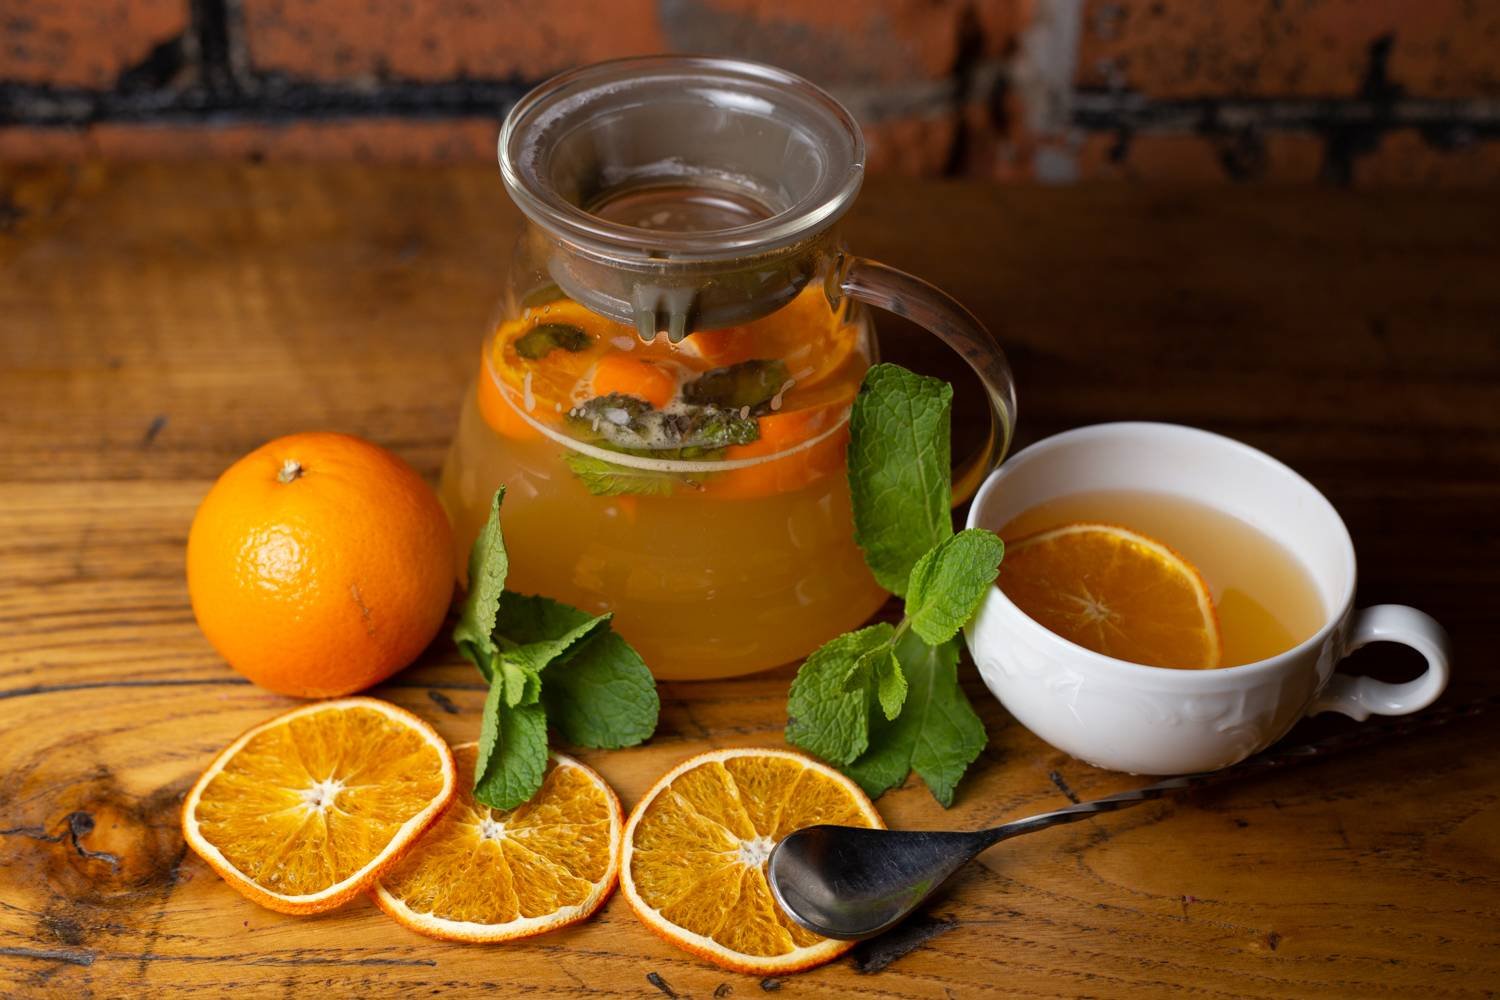 Сок лимона вода корица. Чай апельсин облепиха мята лимон. Чай апельсин имбирь. Чай имбирь цитрус. Чай с облепихой и апельсином.